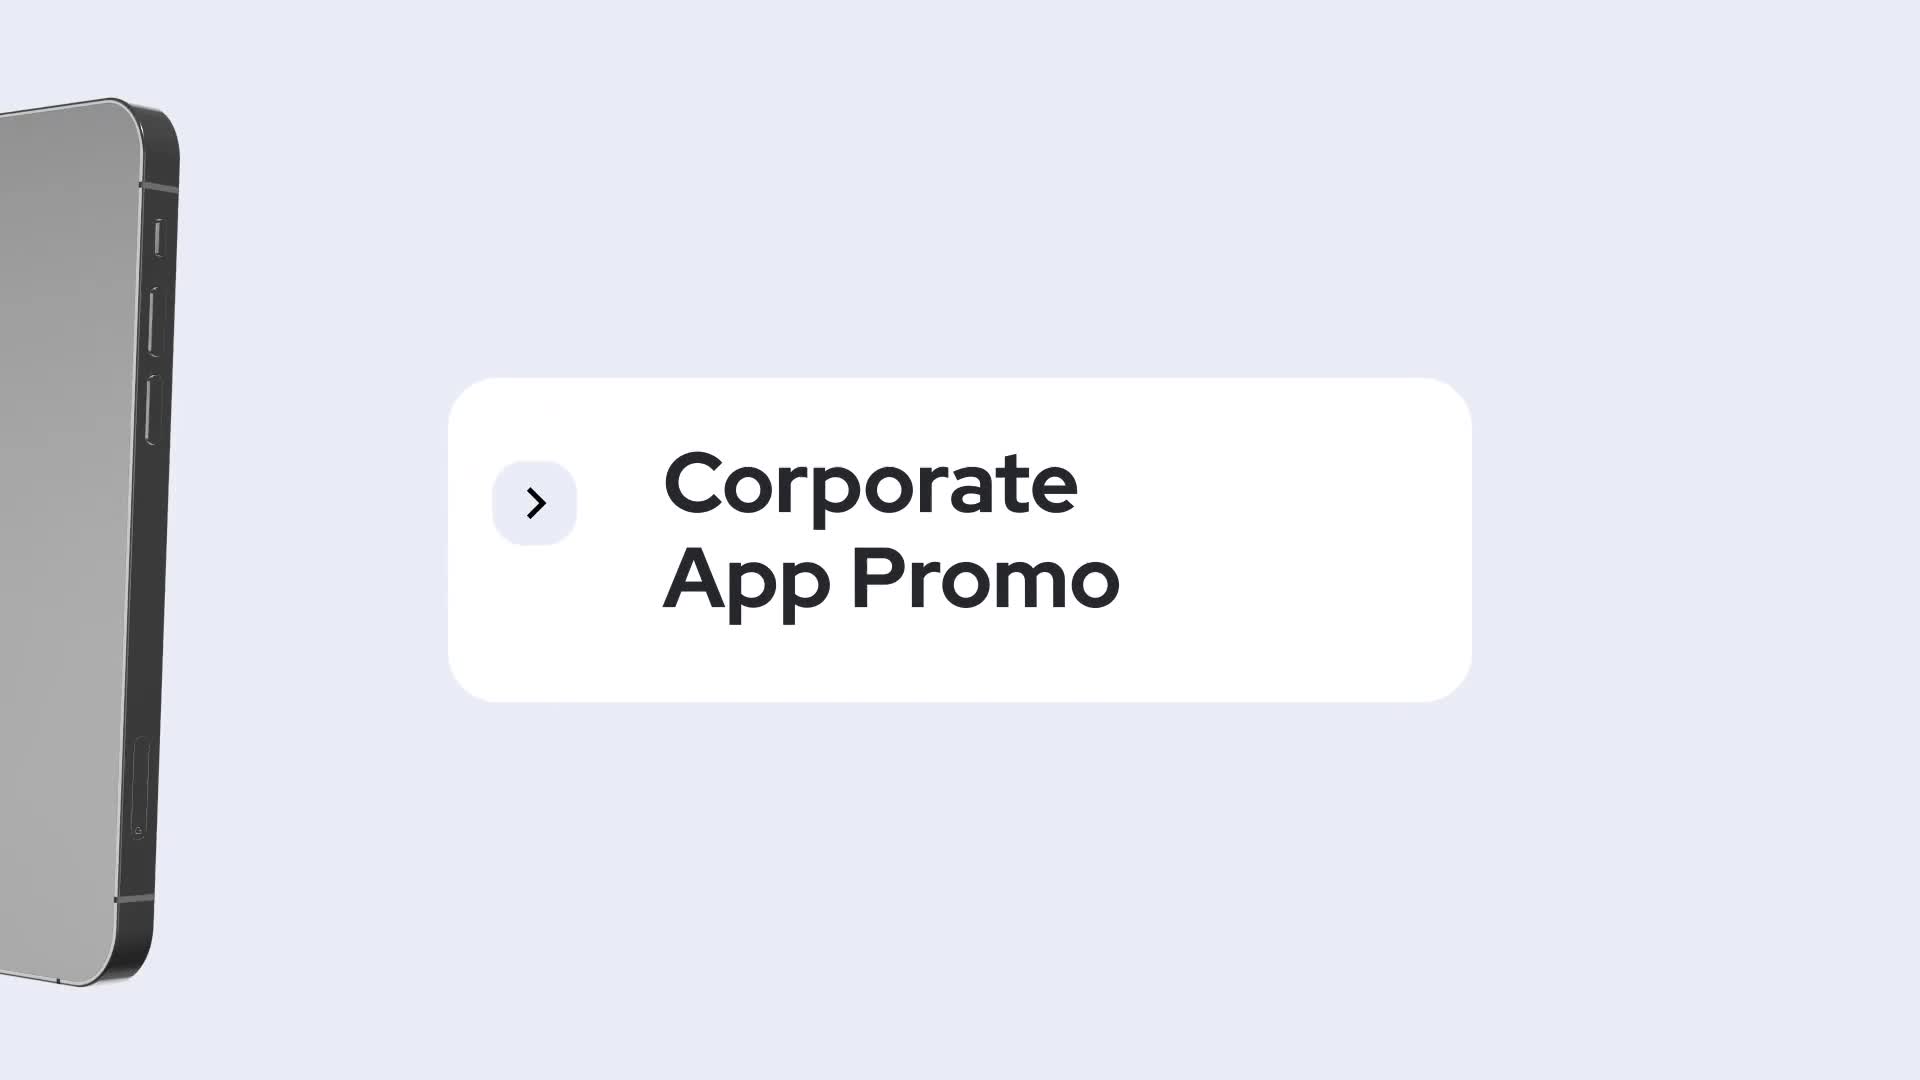 Corporate App Promo for Premiere Pro Videohive 34096293 Premiere Pro Image 1